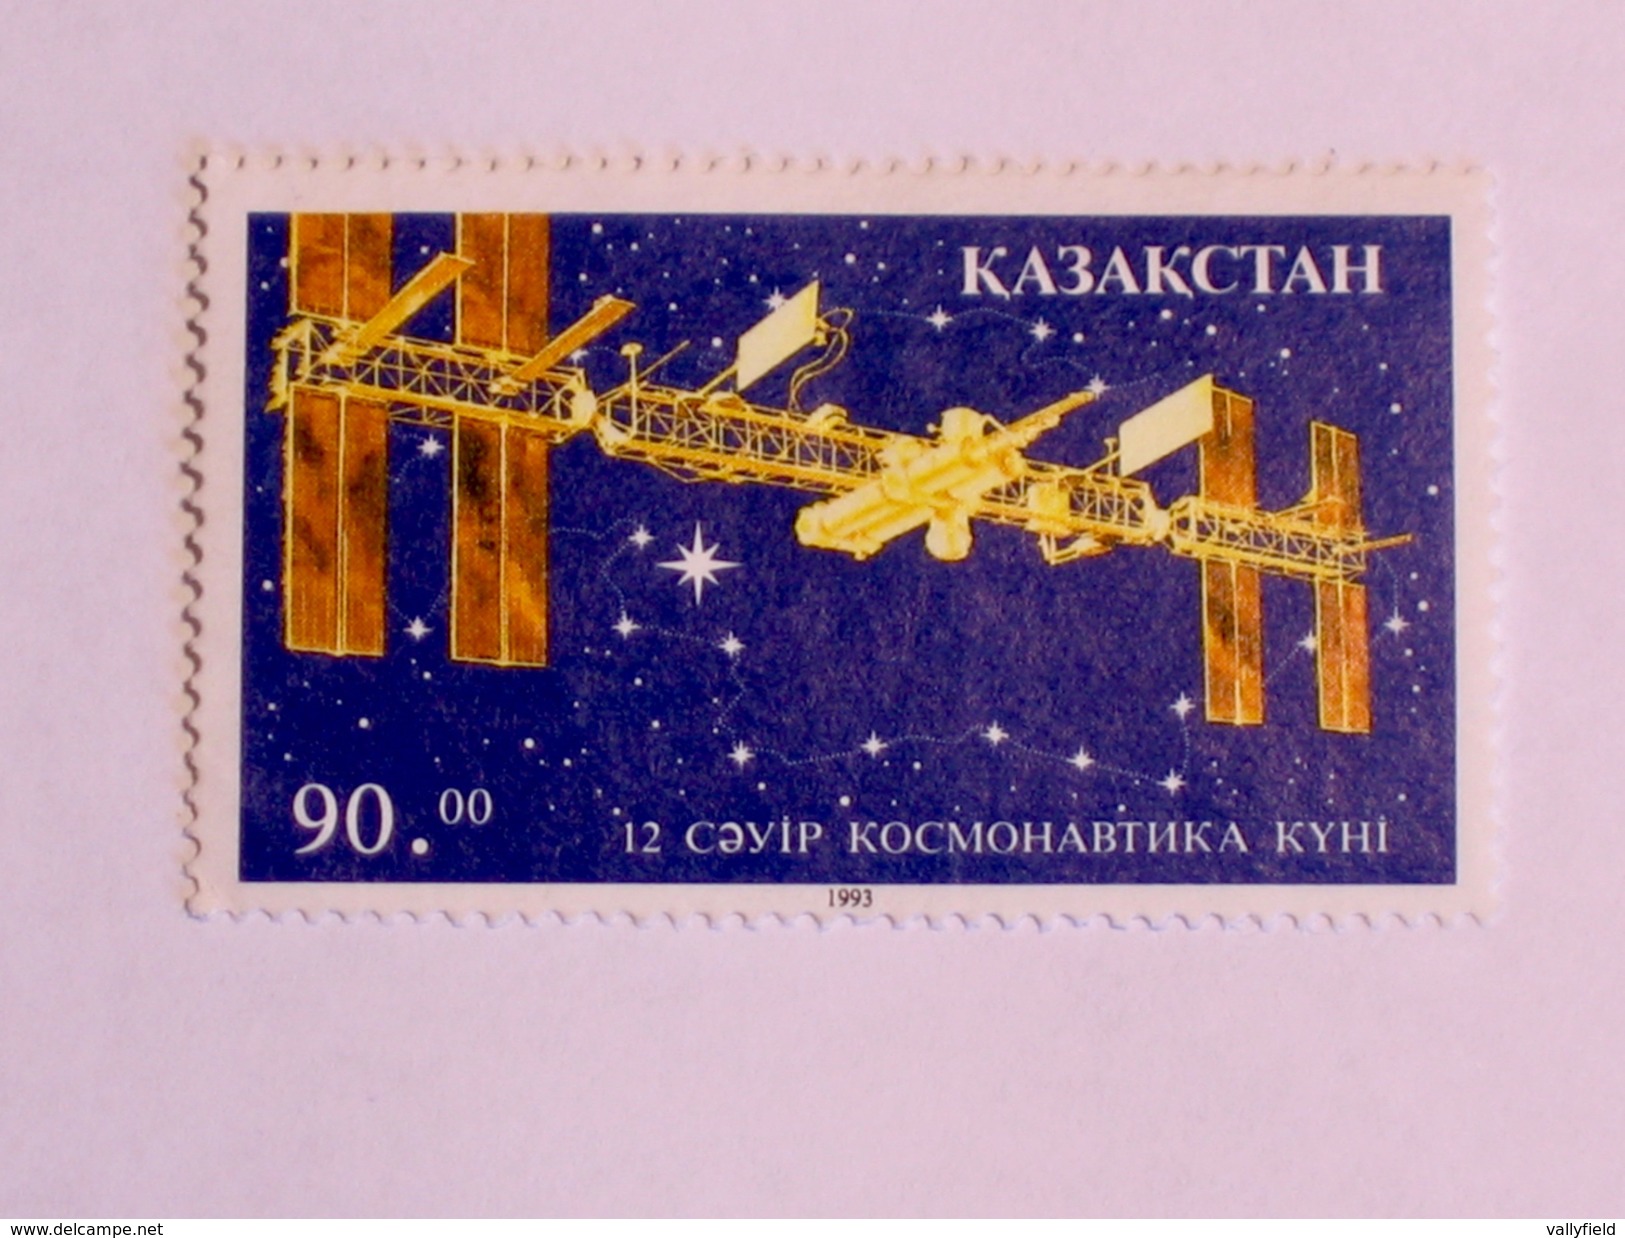 KAZAKSTAN  1993  LOT #1 SPACE - Kazakhstan